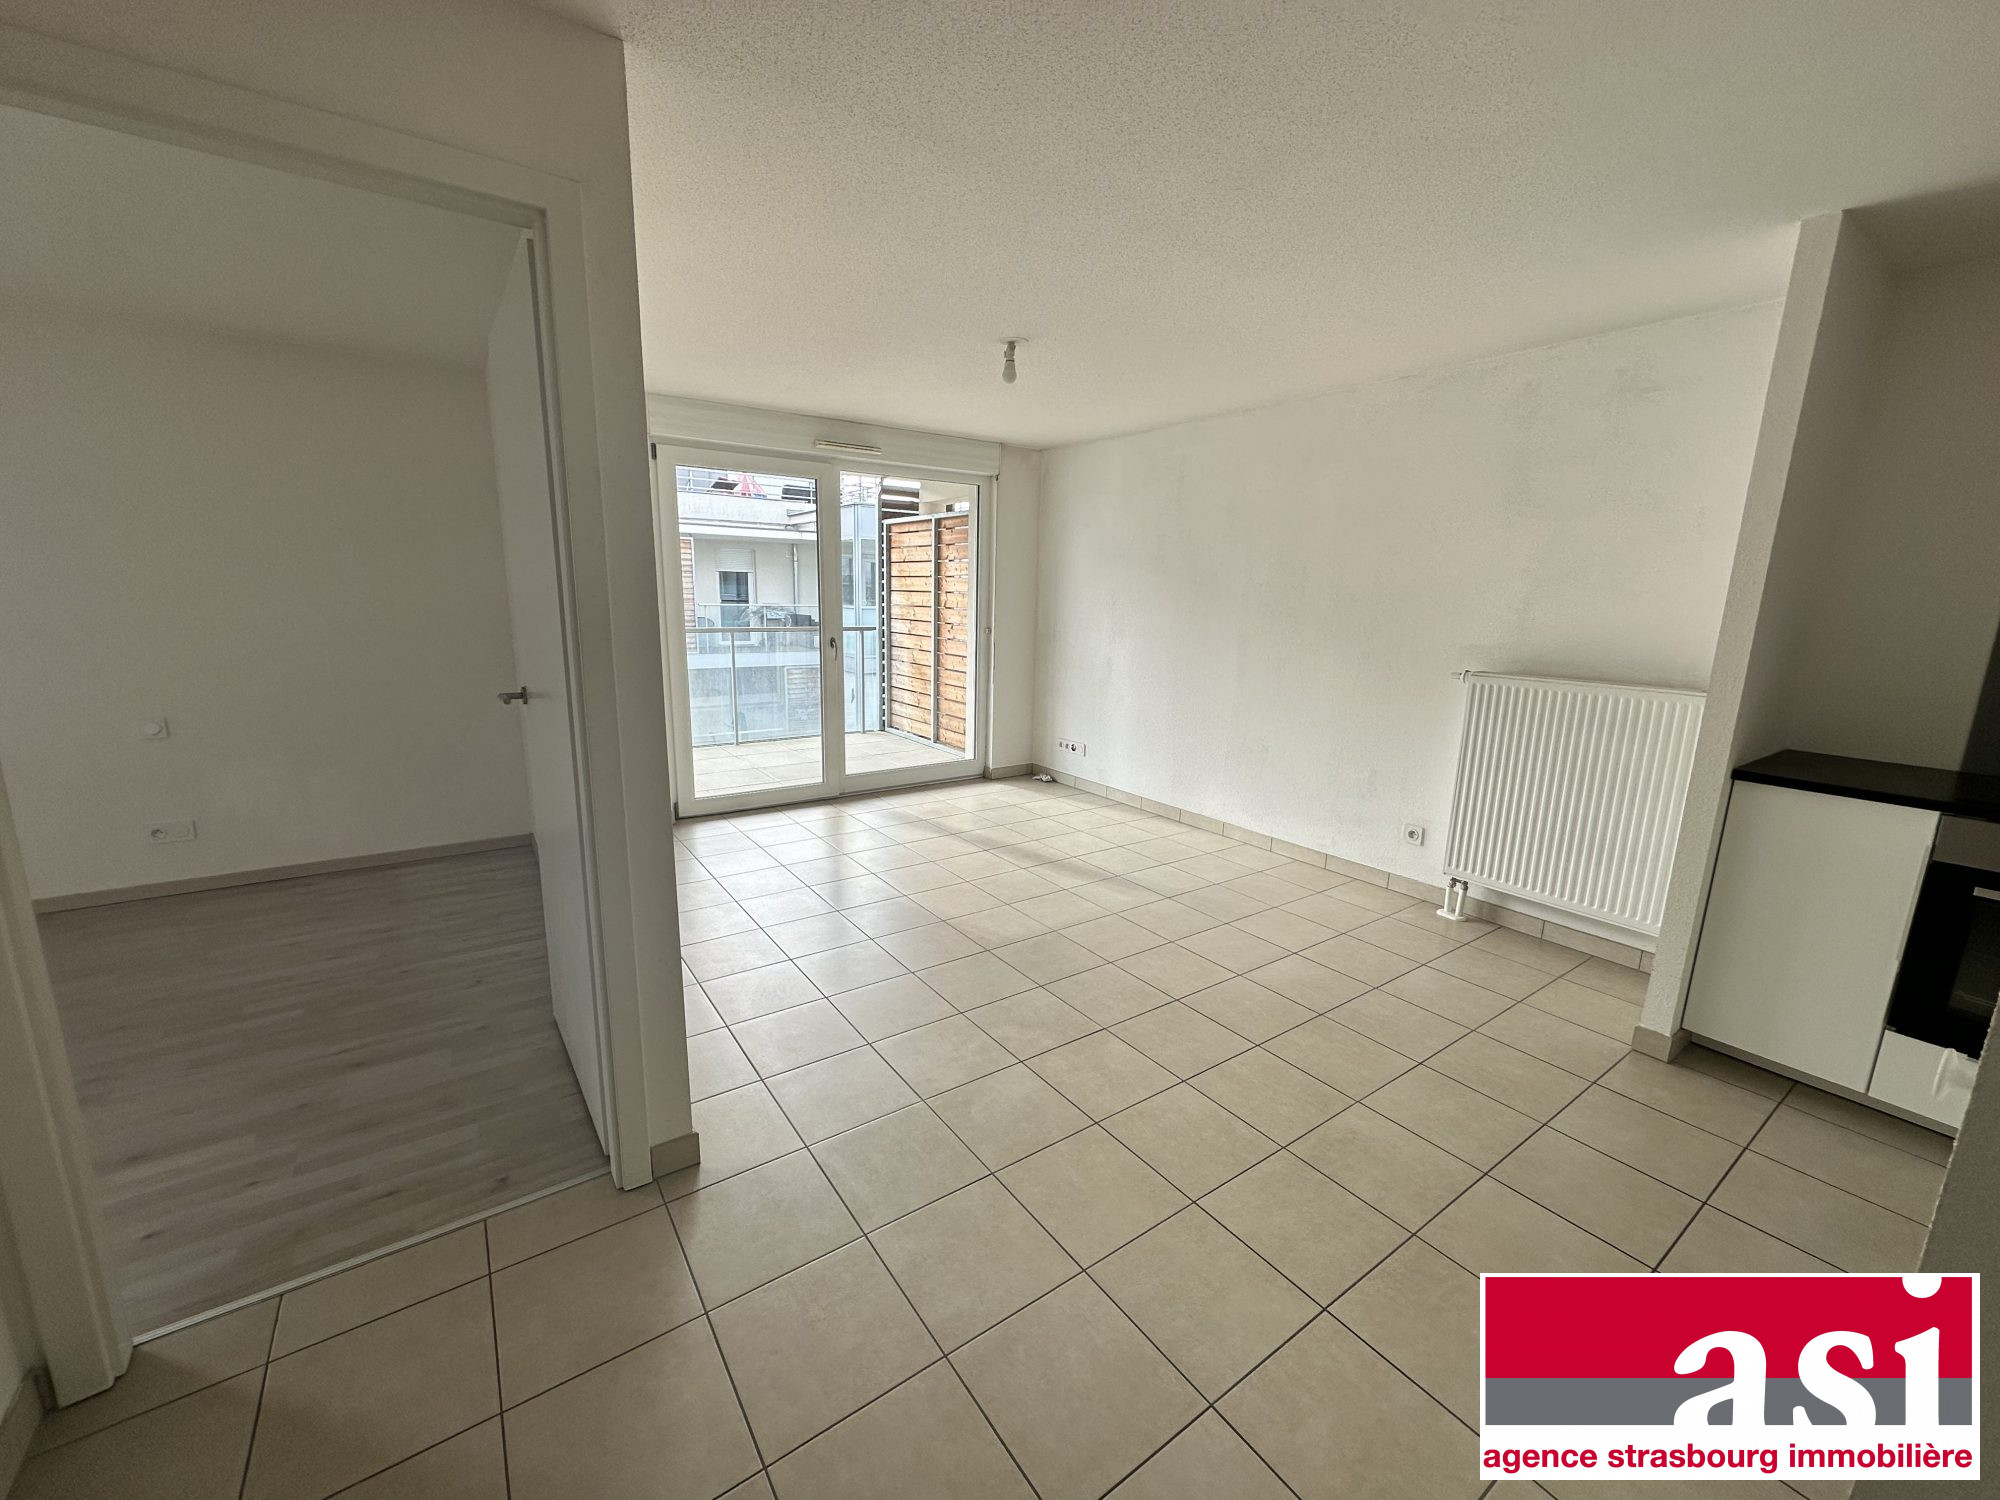 Vente Appartement 40m² 2 Pièces à Strasbourg (67000) - Agence Strasbourg Immobilière